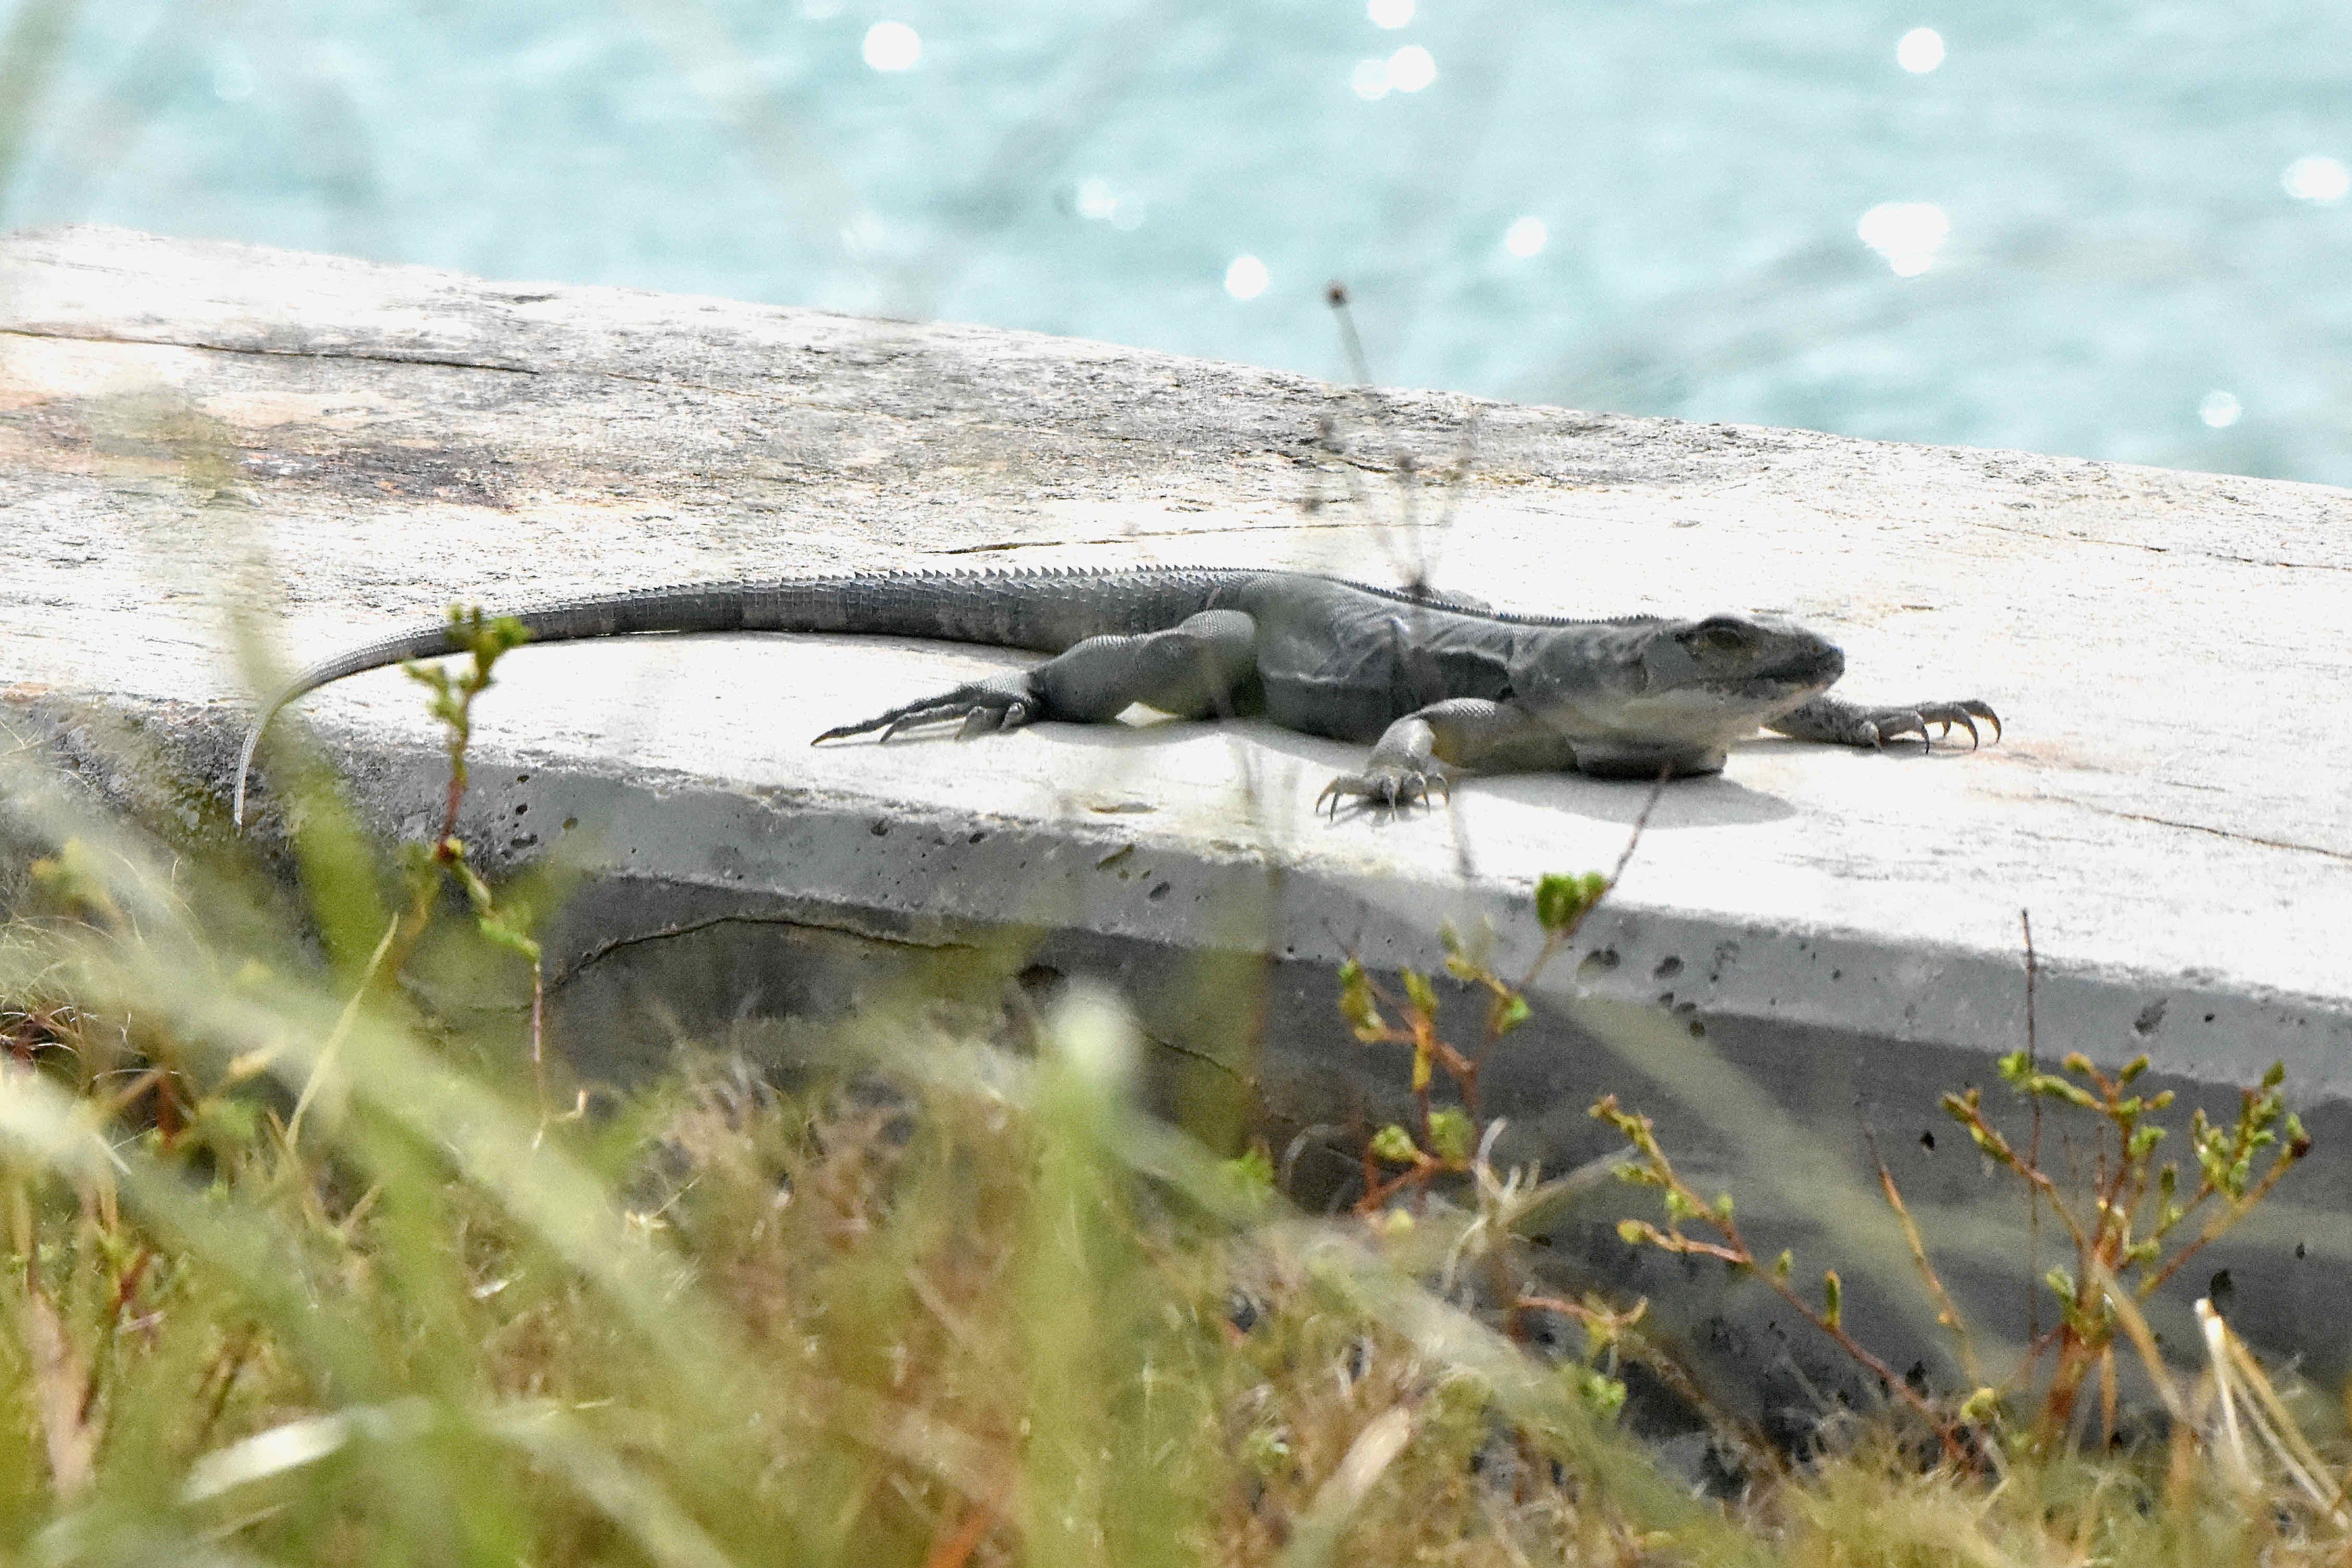 spiny-tailed iguana